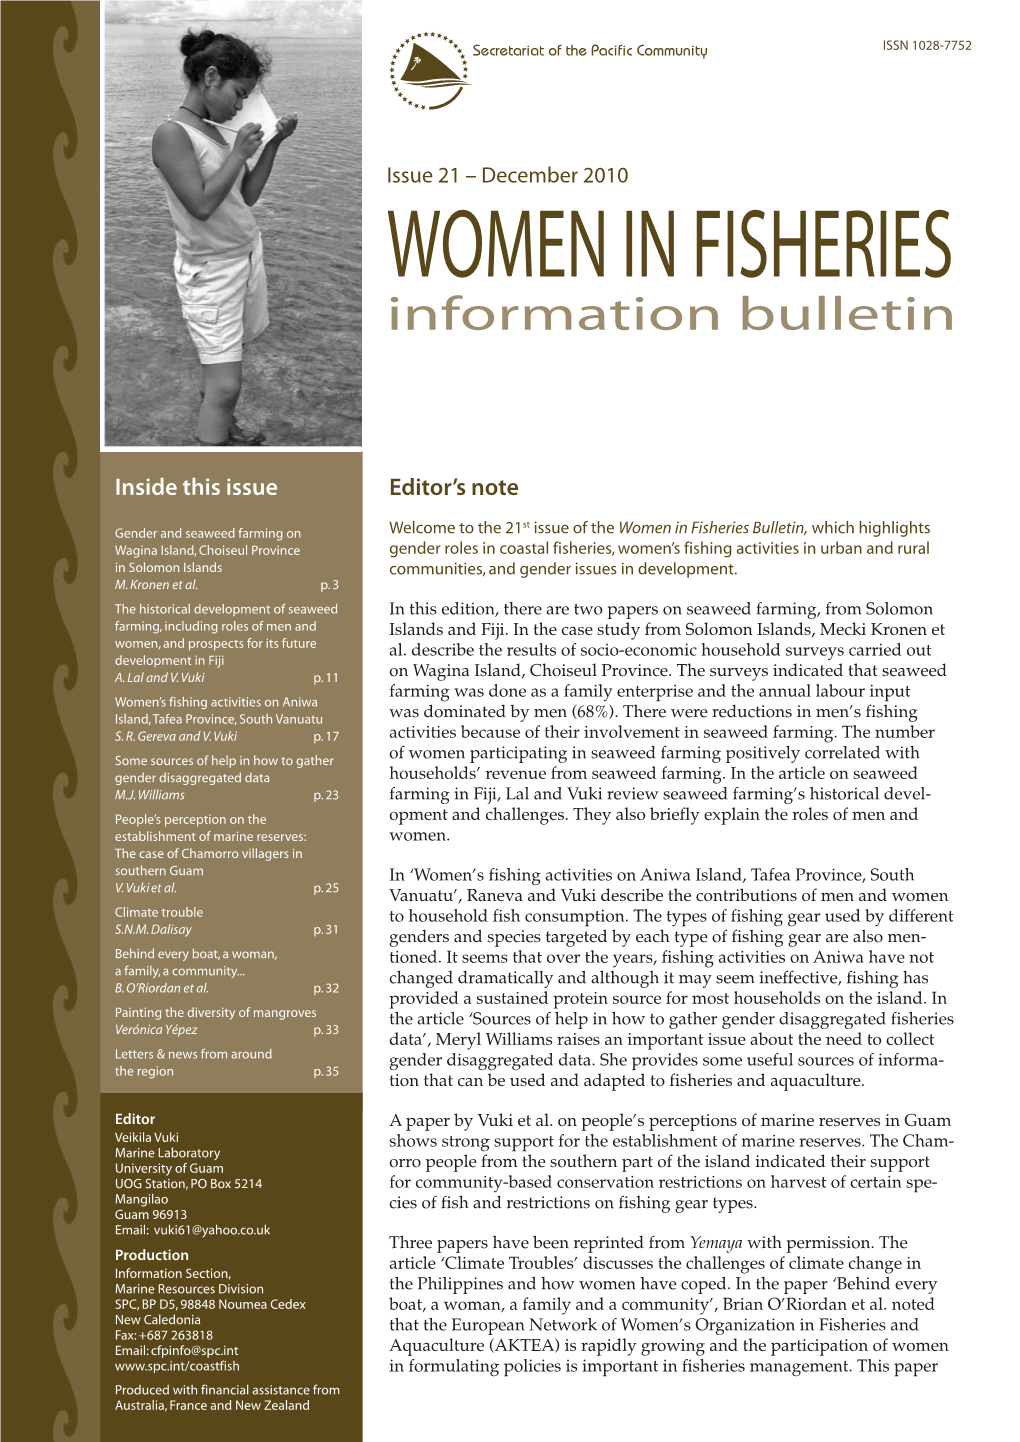 SPC Women in Fisheries Information Bulletin